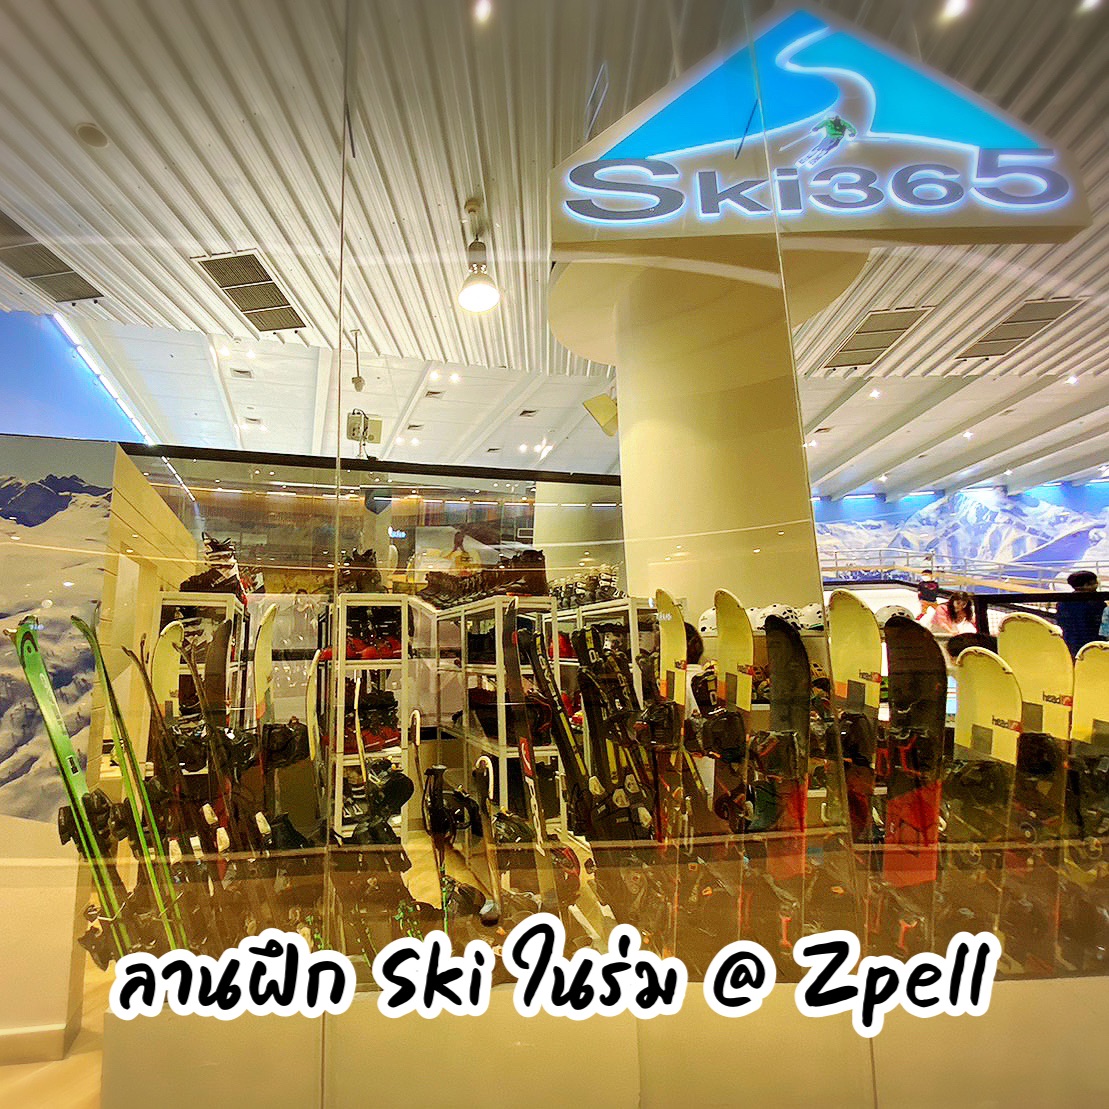 在泰国,您可以在滑雪365 @ Zpell FuturePark 滑雪。